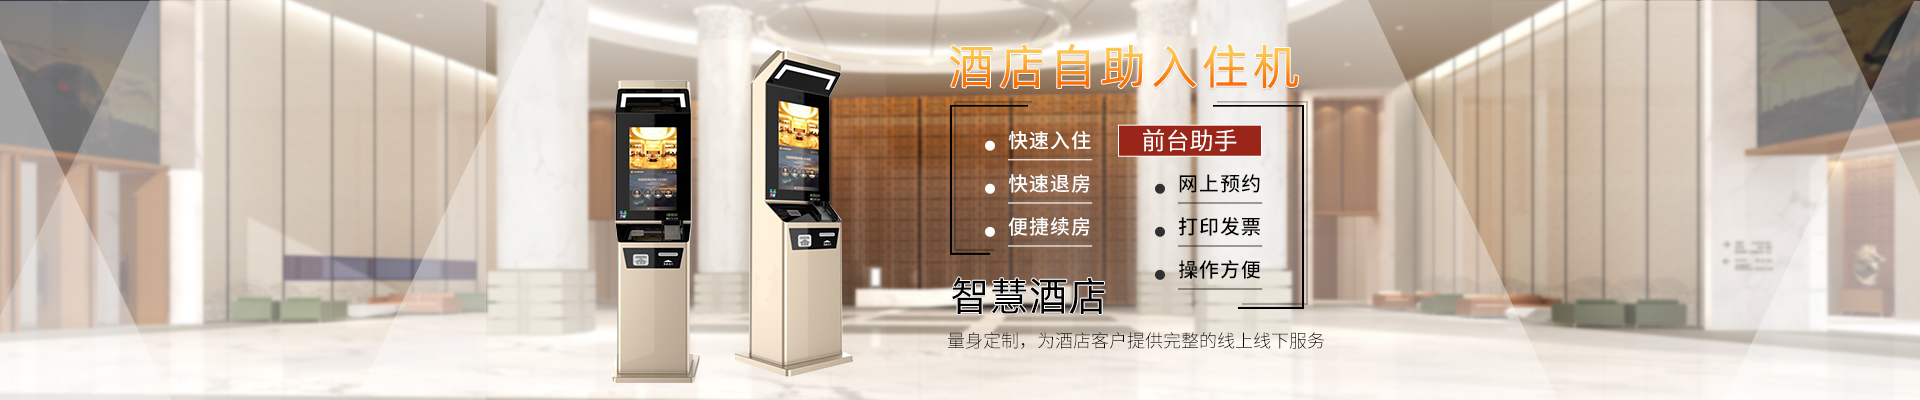 自助终端机,广州智能终端机,广东自助服务终端机